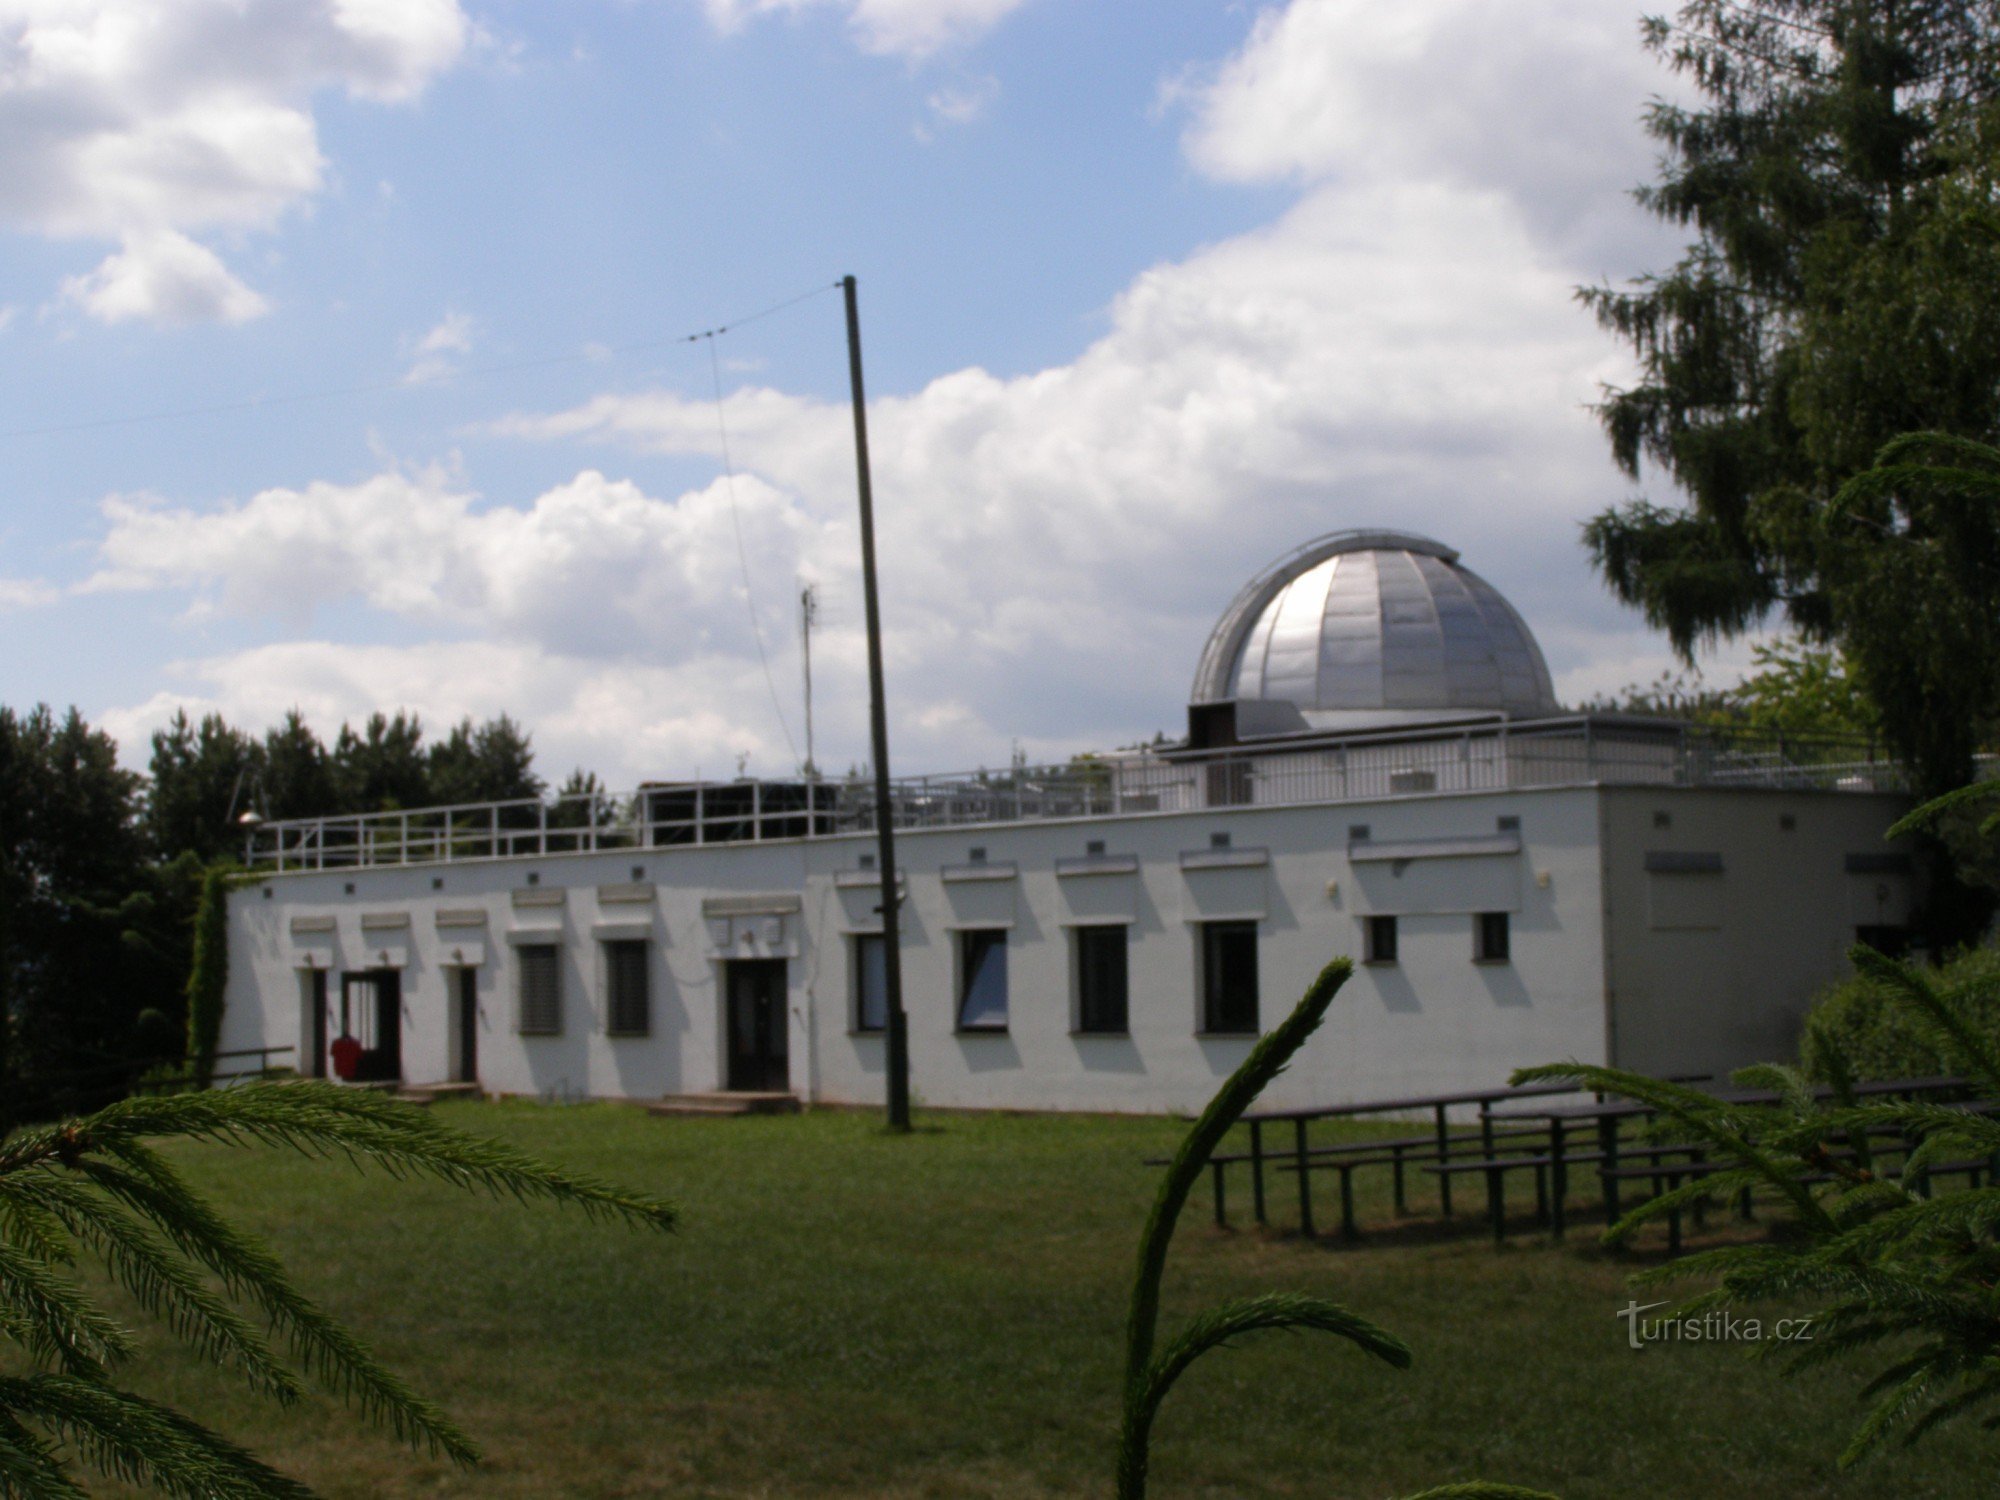 pice - Úpice observatorium